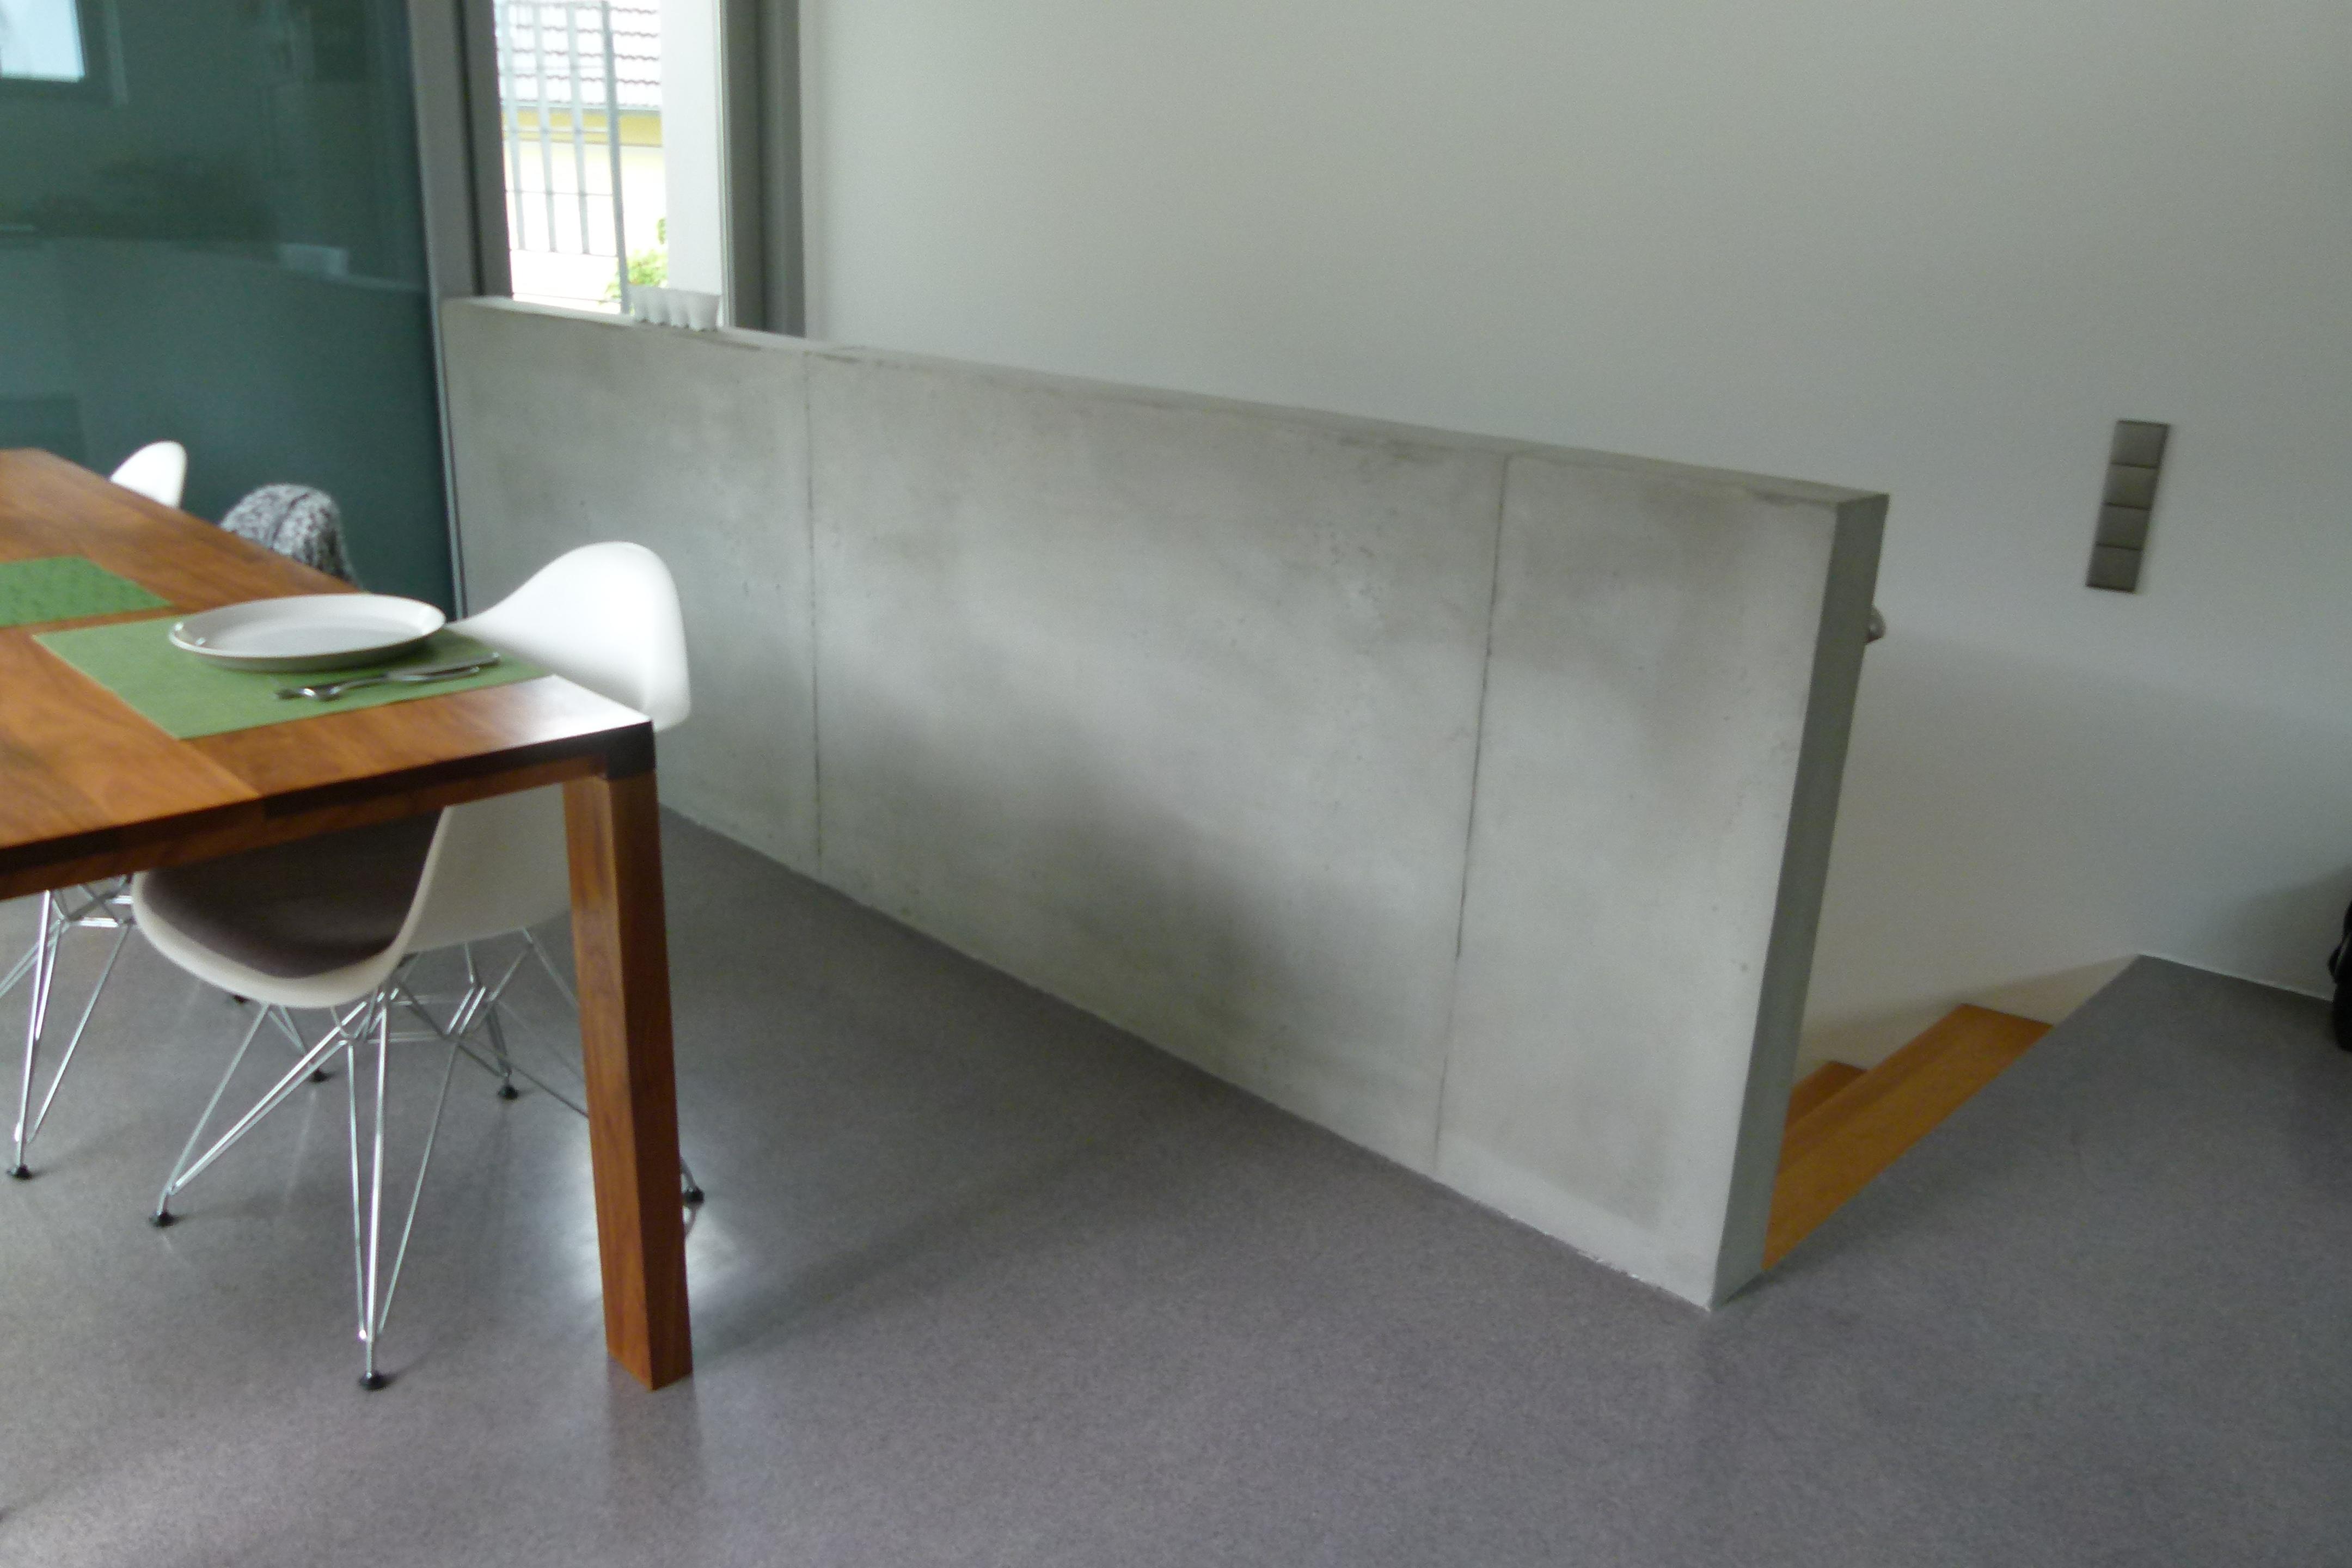 Brüstung Esszimmer in Betopnlook #betonwand #betonwandgestalten ©Ursula Kohlmann